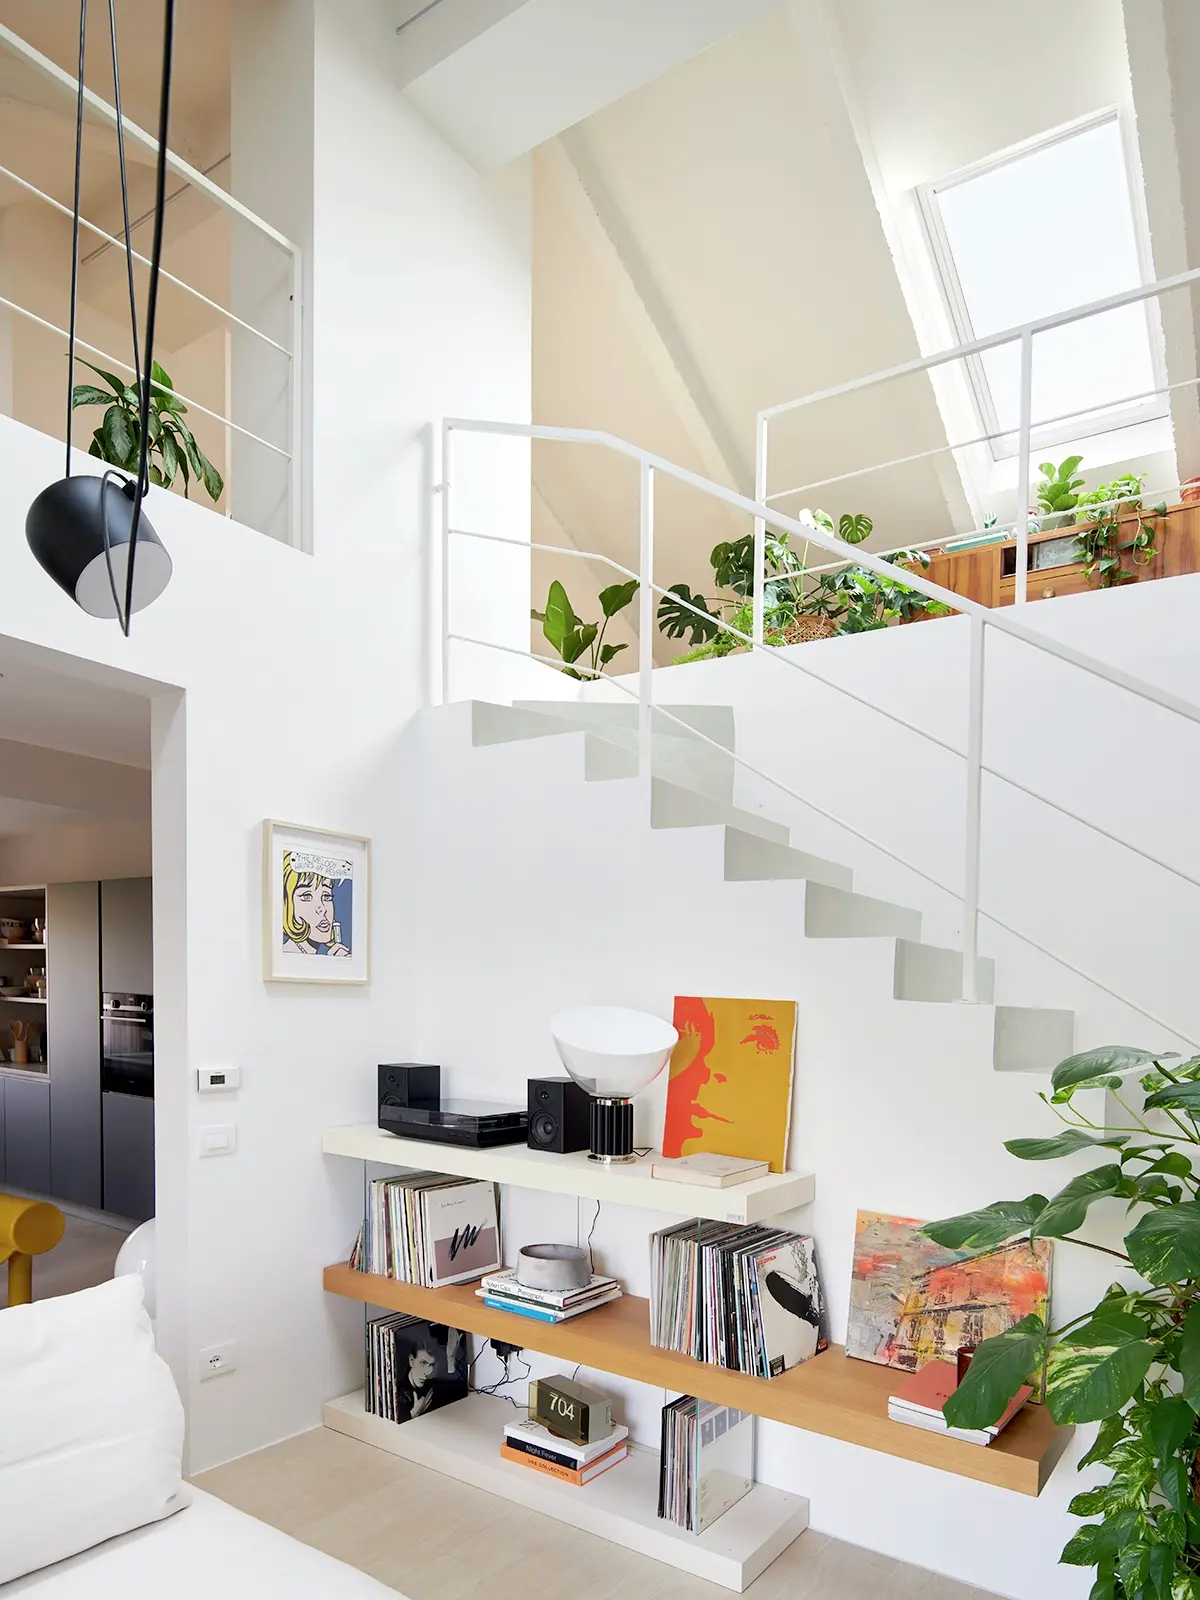 Une pièce lumineuse avec des meubles modernes, des plantes vertes et une grande fenêtre de toit Velux.